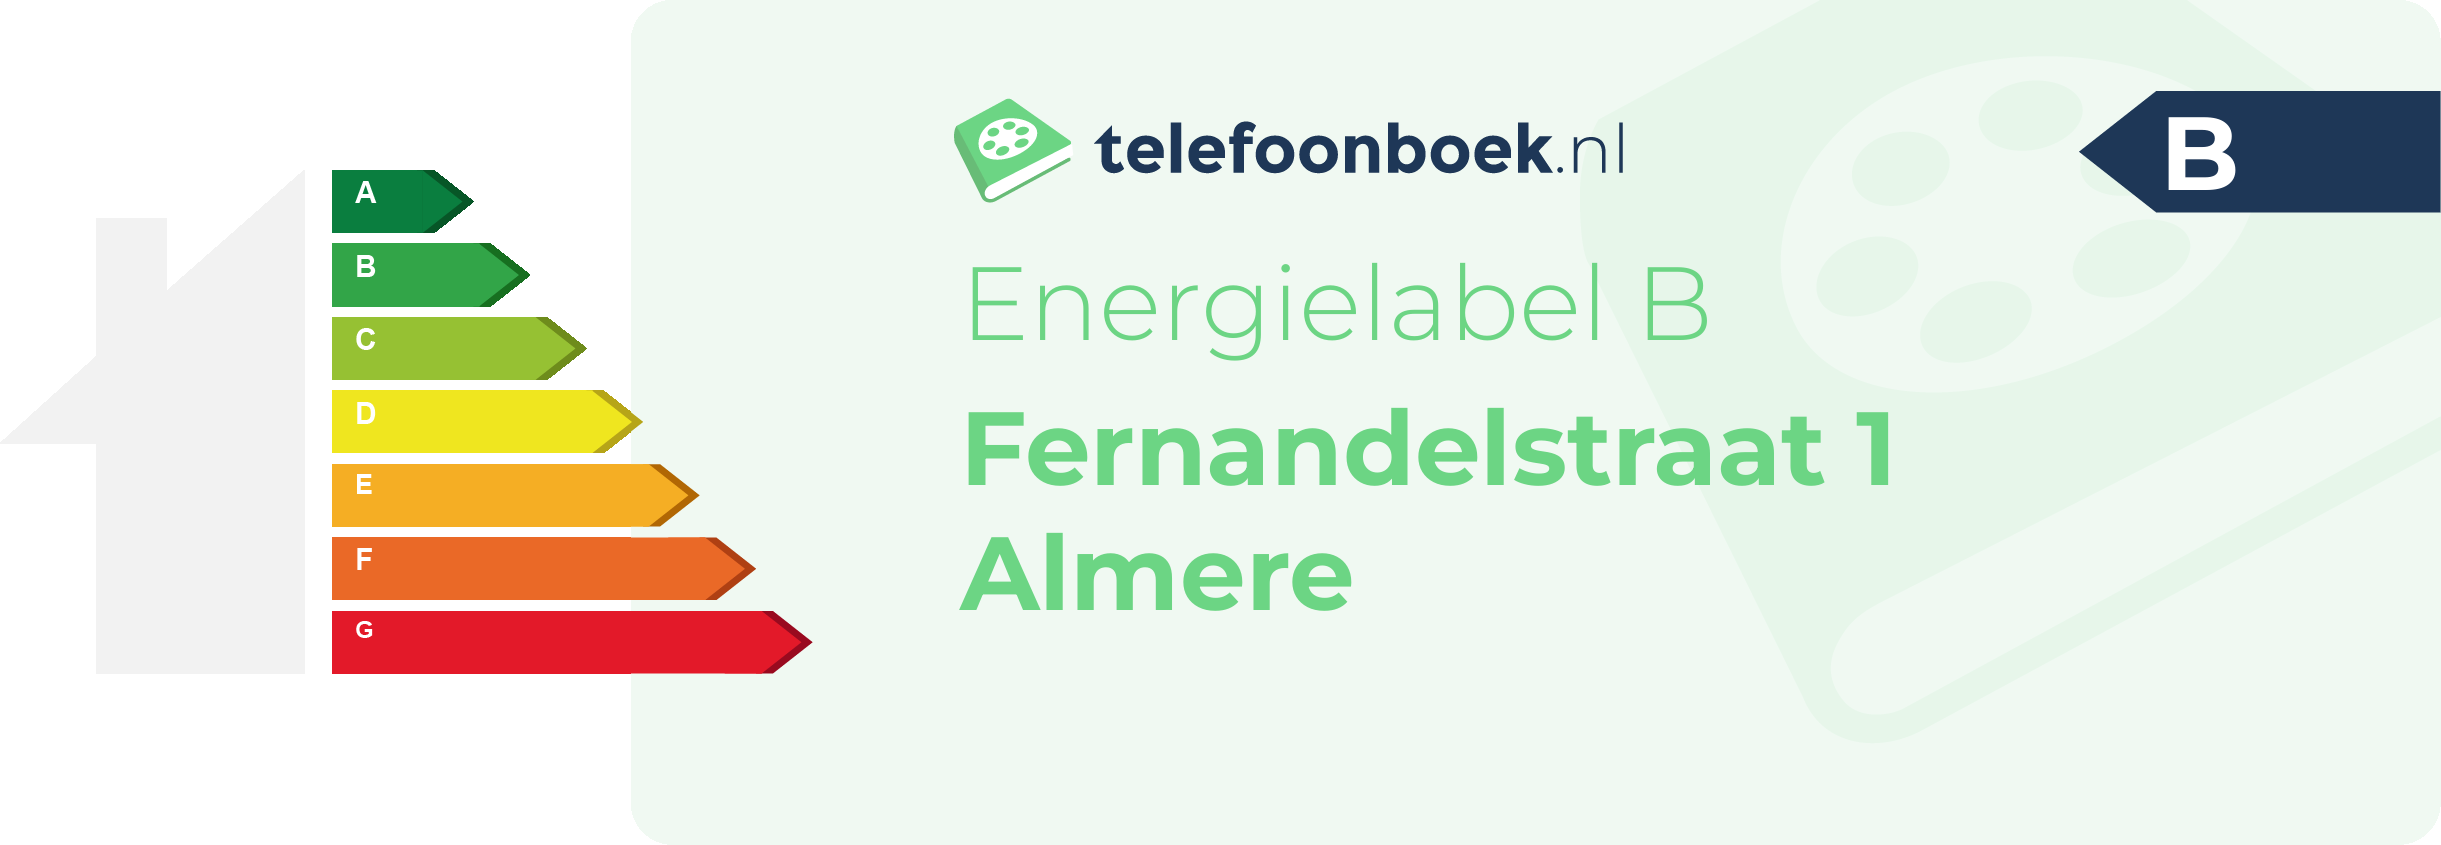 Energielabel Fernandelstraat 1 Almere